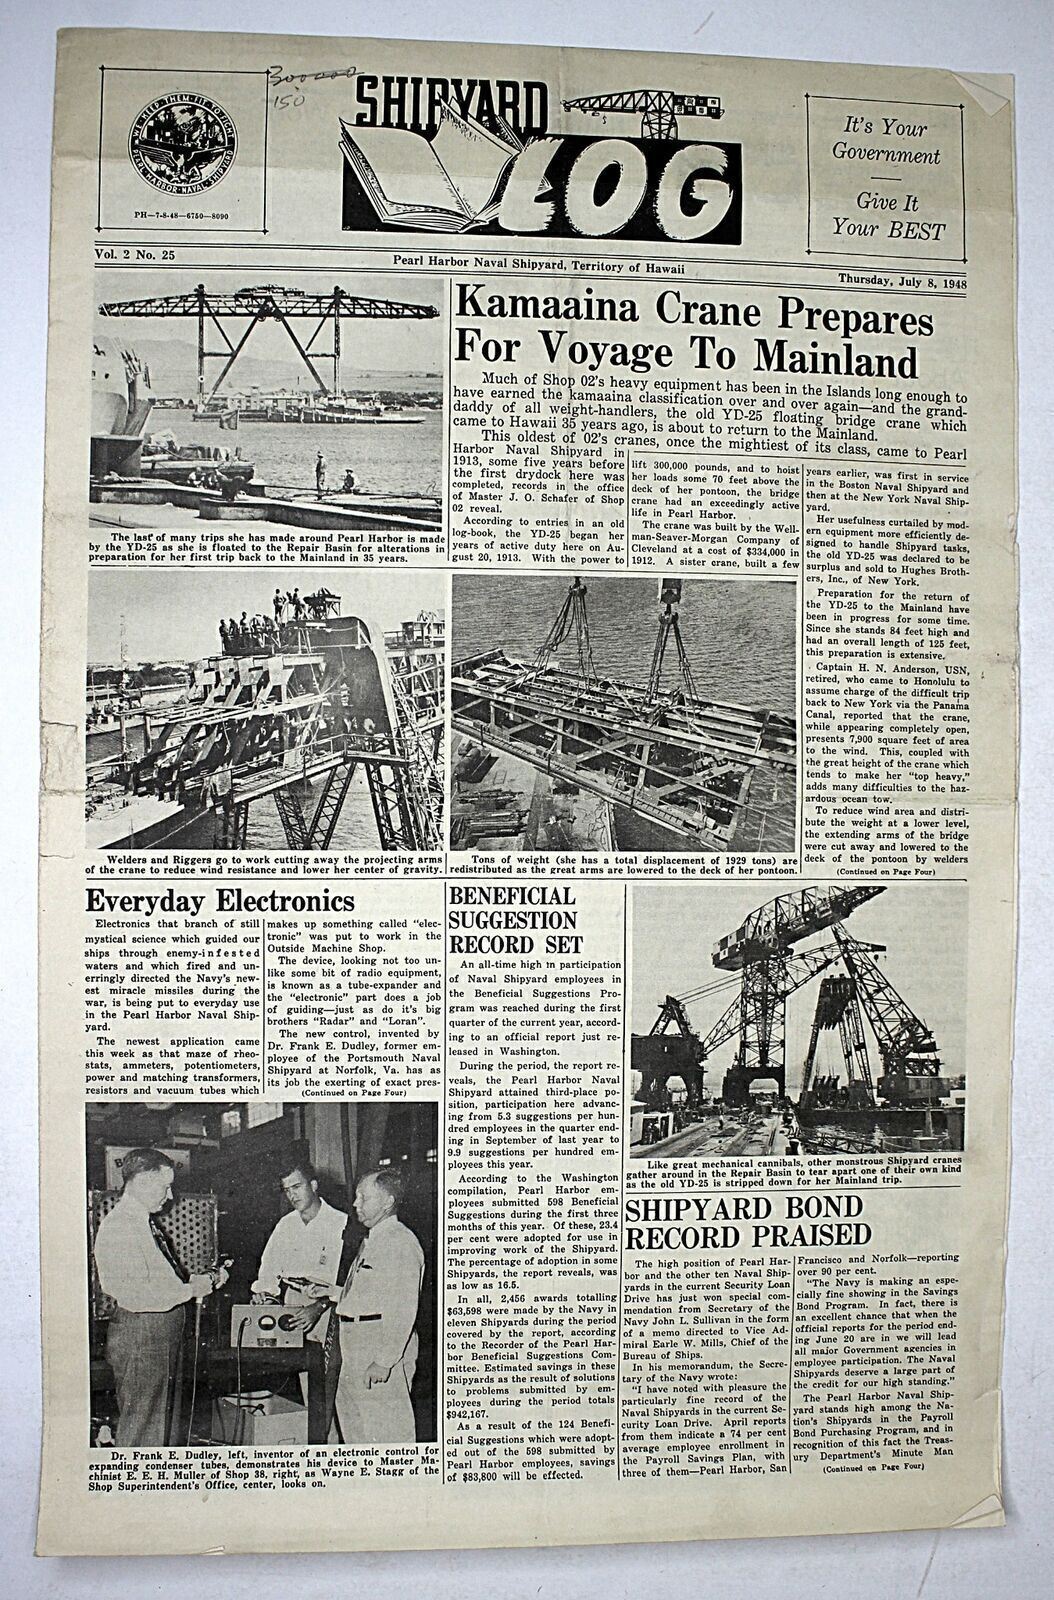 1948 SHIPYARD LOG Pearl Harbor Naval Shipyard Newspaper Territory of Hawaii #3